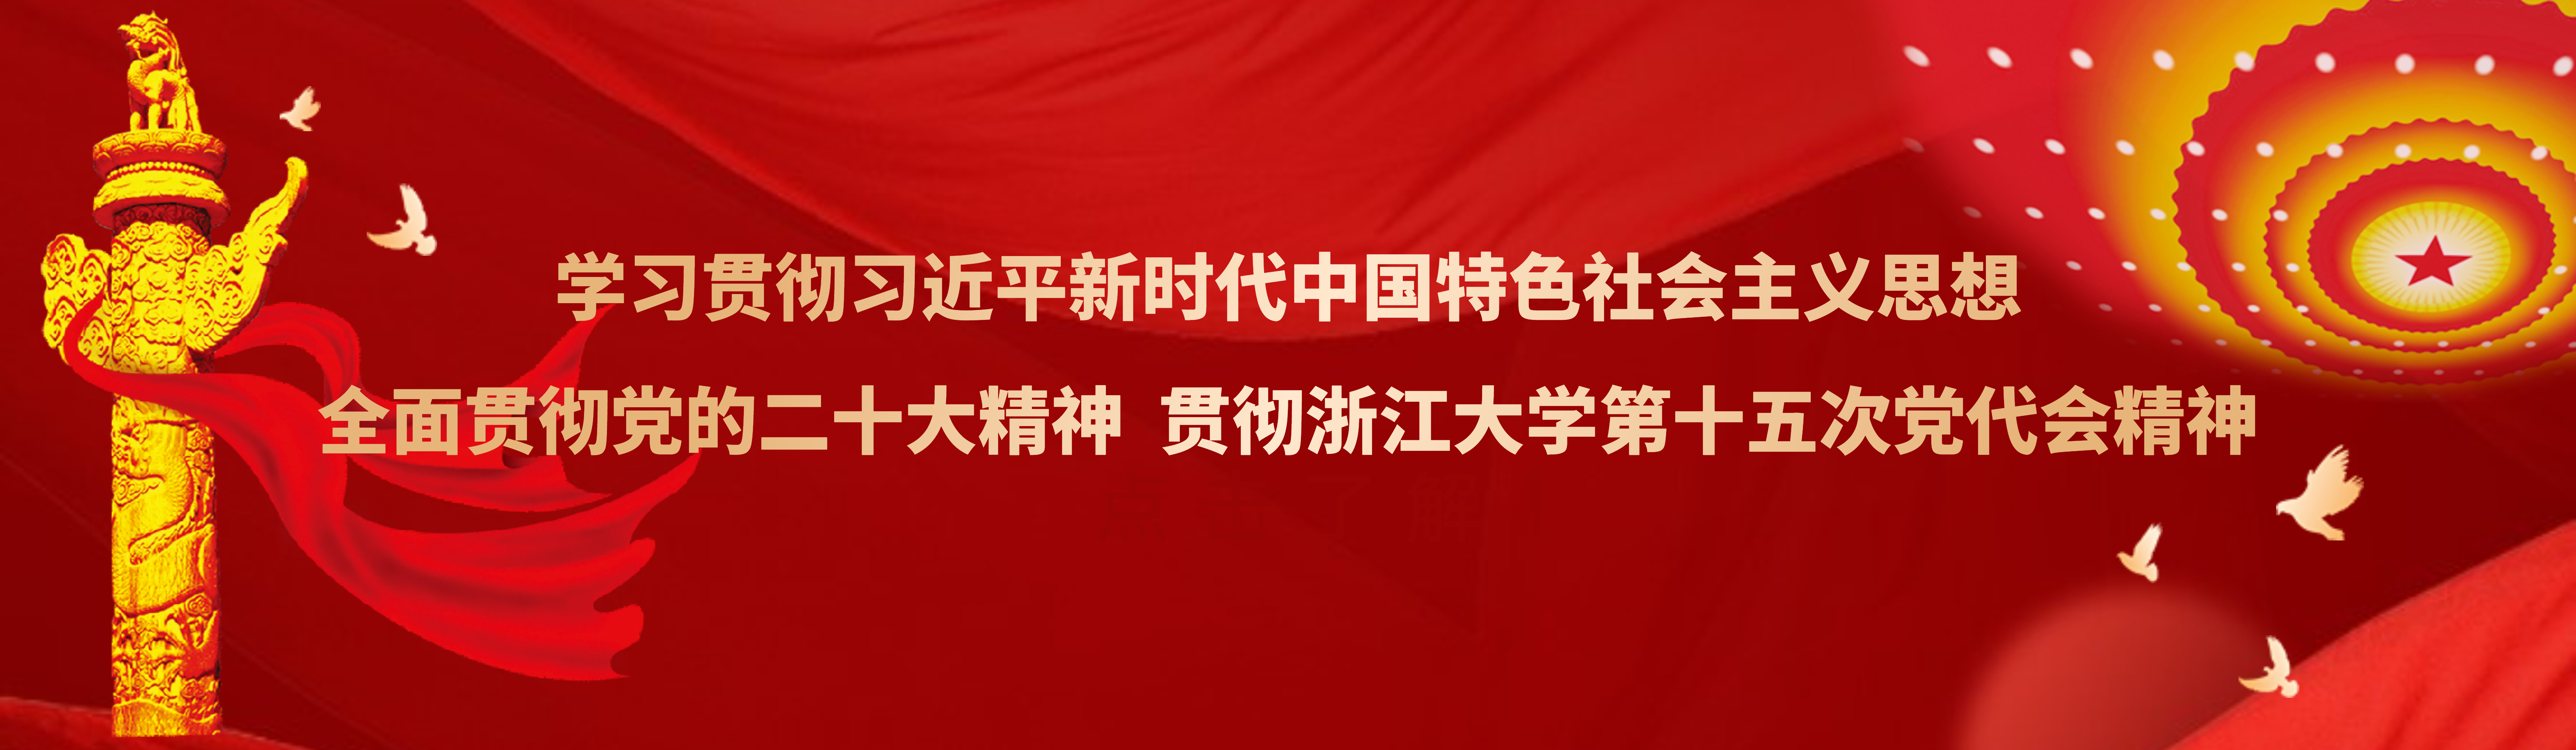 学习贯彻习近平新时代中国特色社会主义思想 热烈庆祝beat365第十五次党代会胜利召开